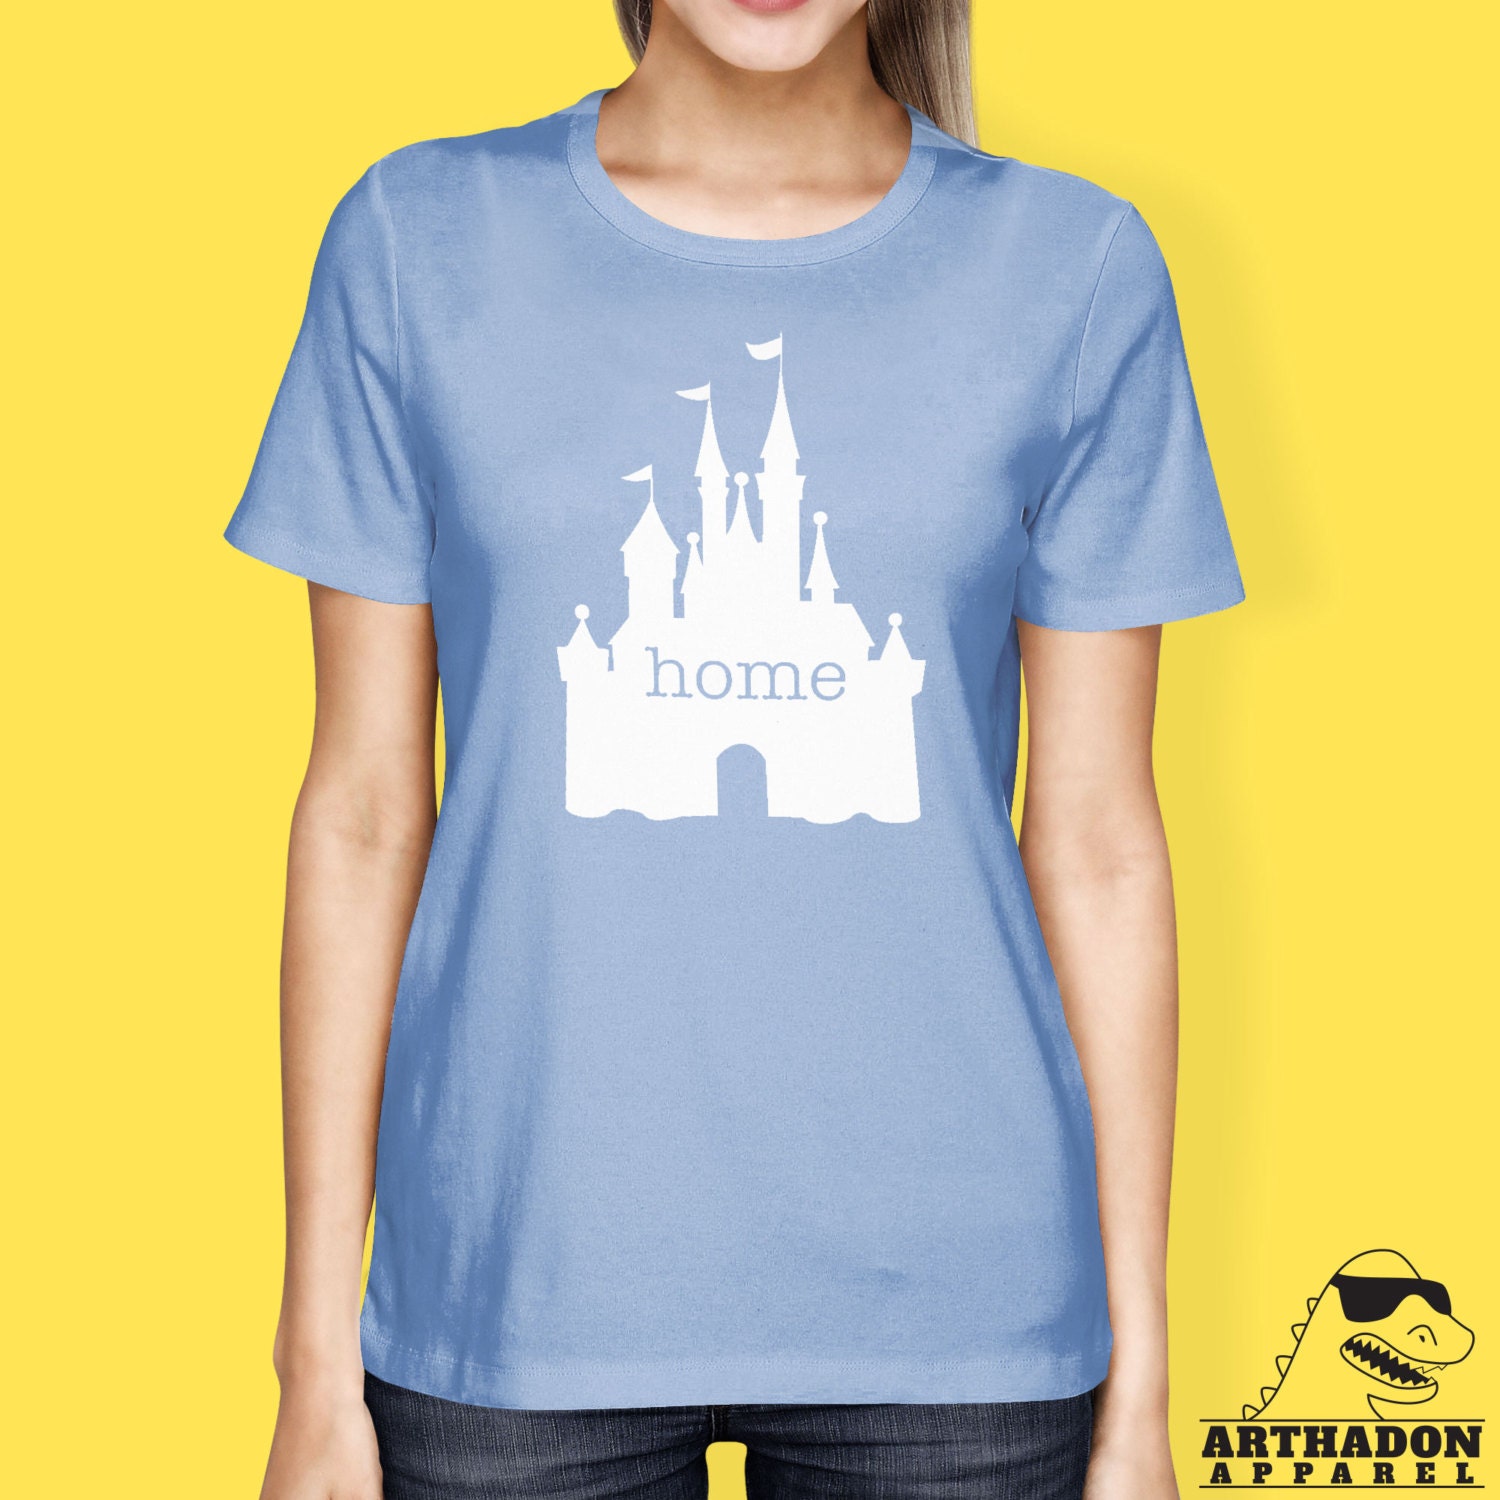 Disney Shirts Magic Kingdom home Home by ArthadonApparel on Etsy